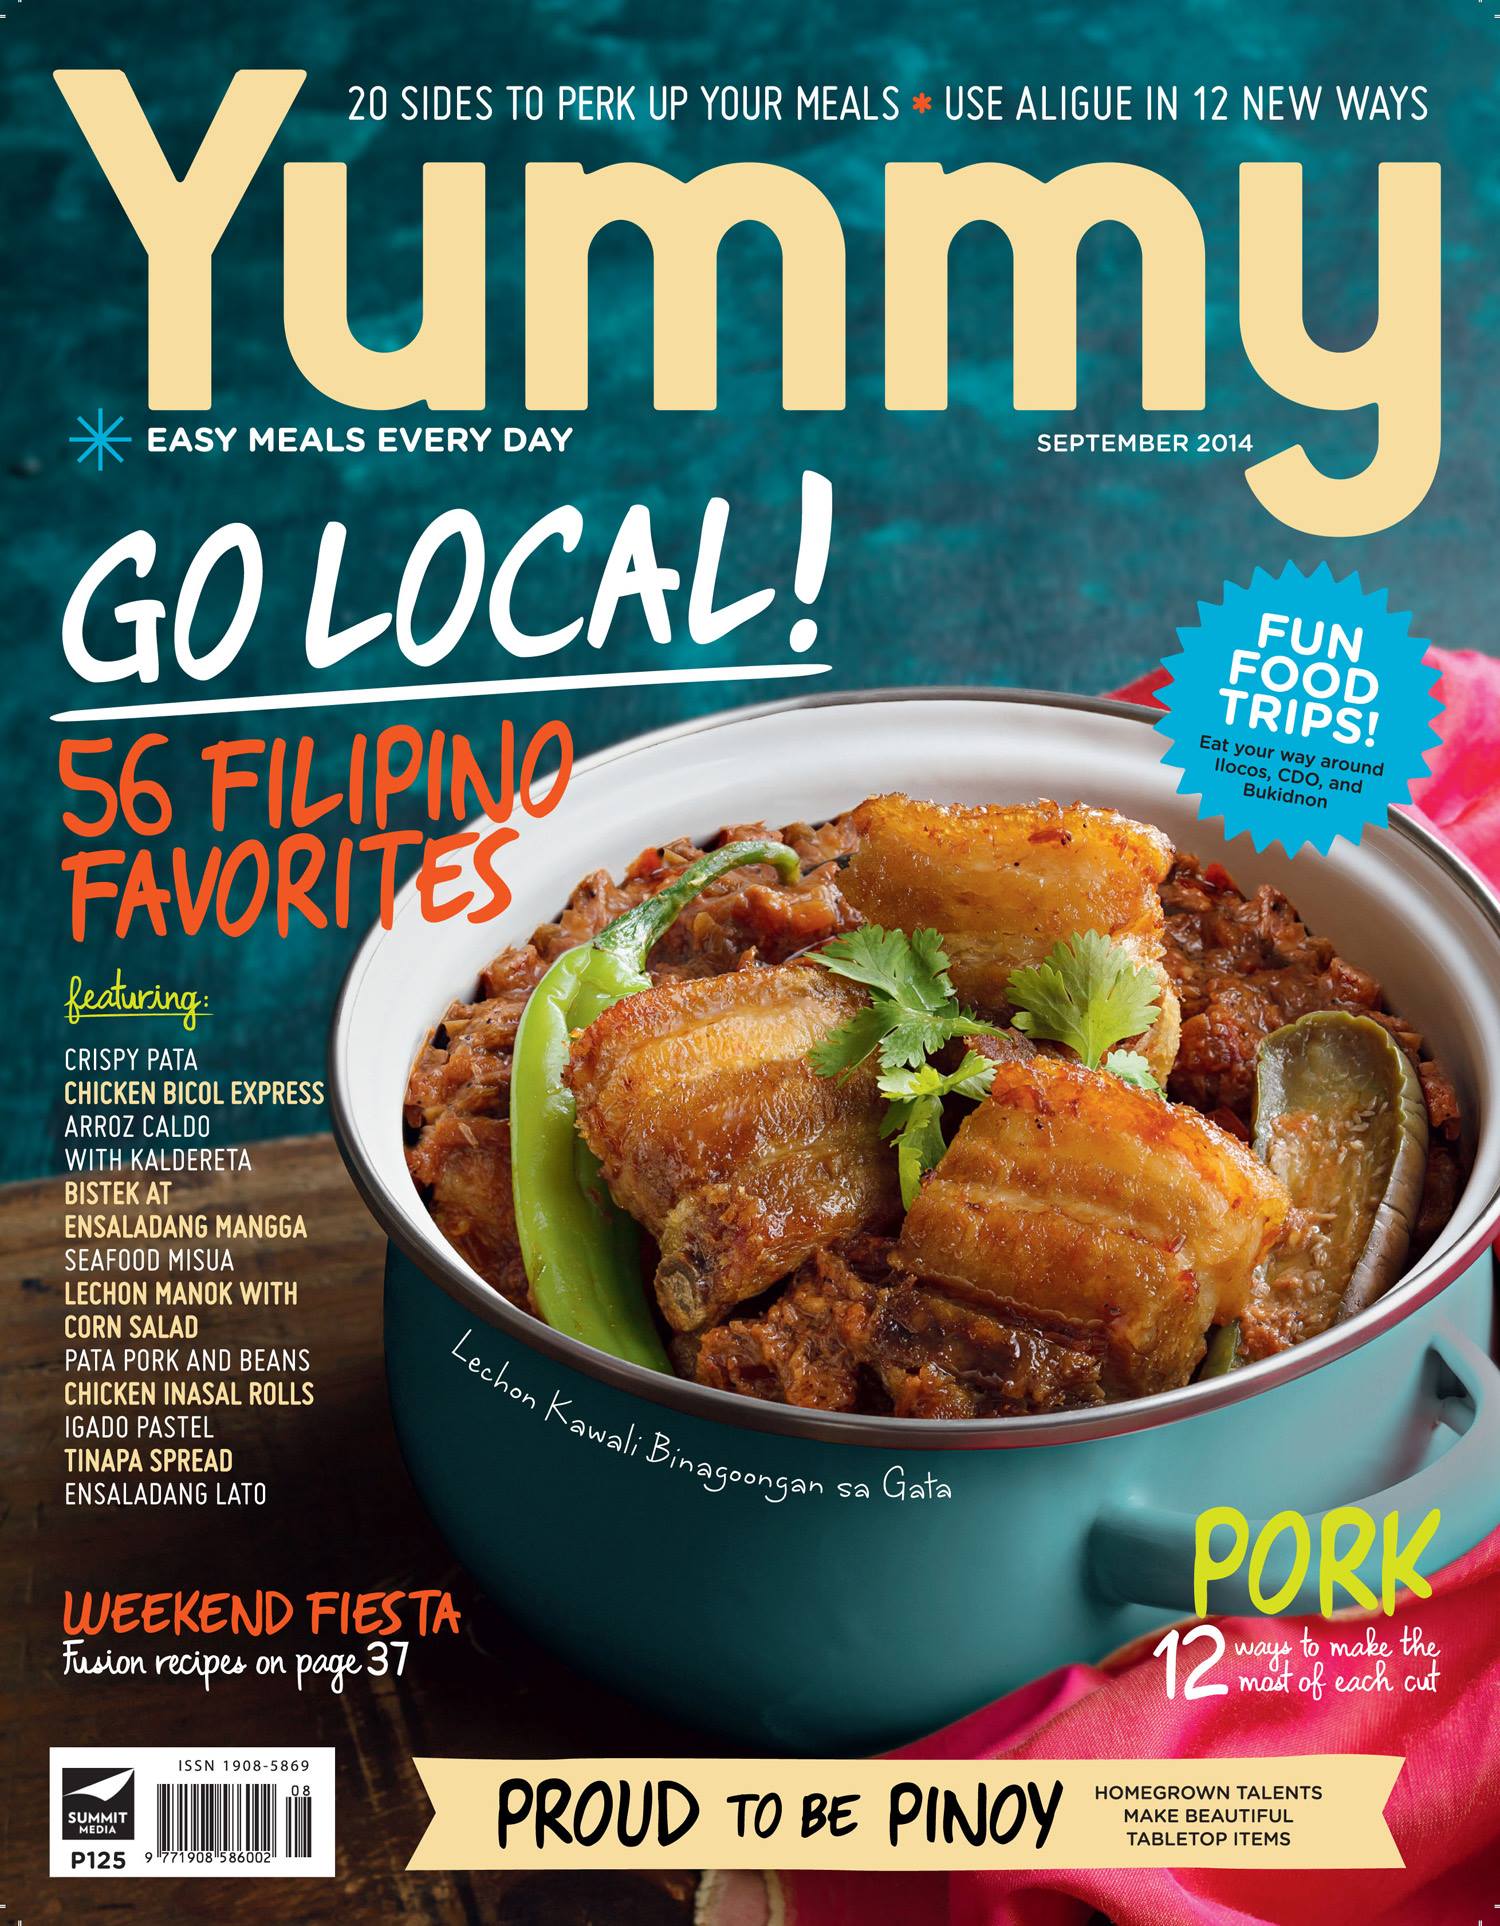 Yummy Magazine September 2014 Cover - Lechon Kawali Binagoongan sa Gata